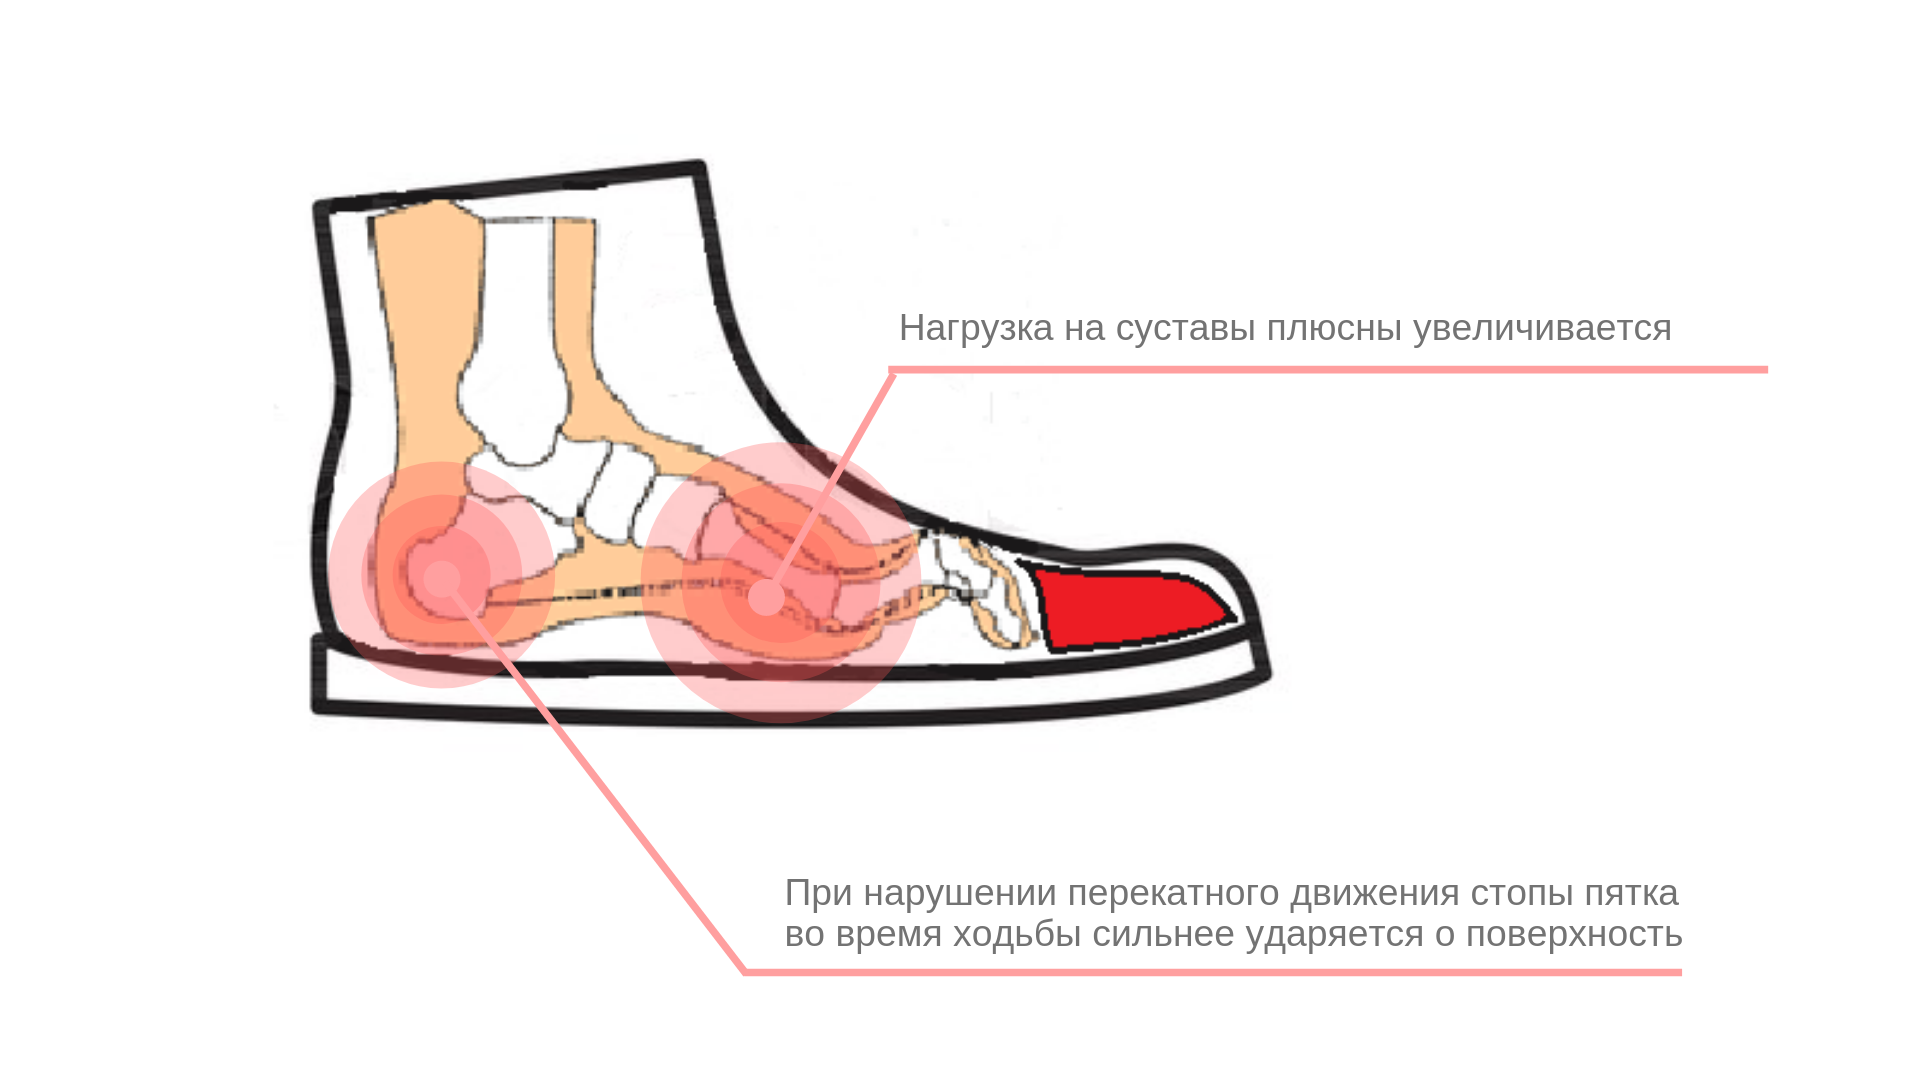 Как уменьшить размер обуви, в том числе кожаной, в домашних условиях или мастерской?